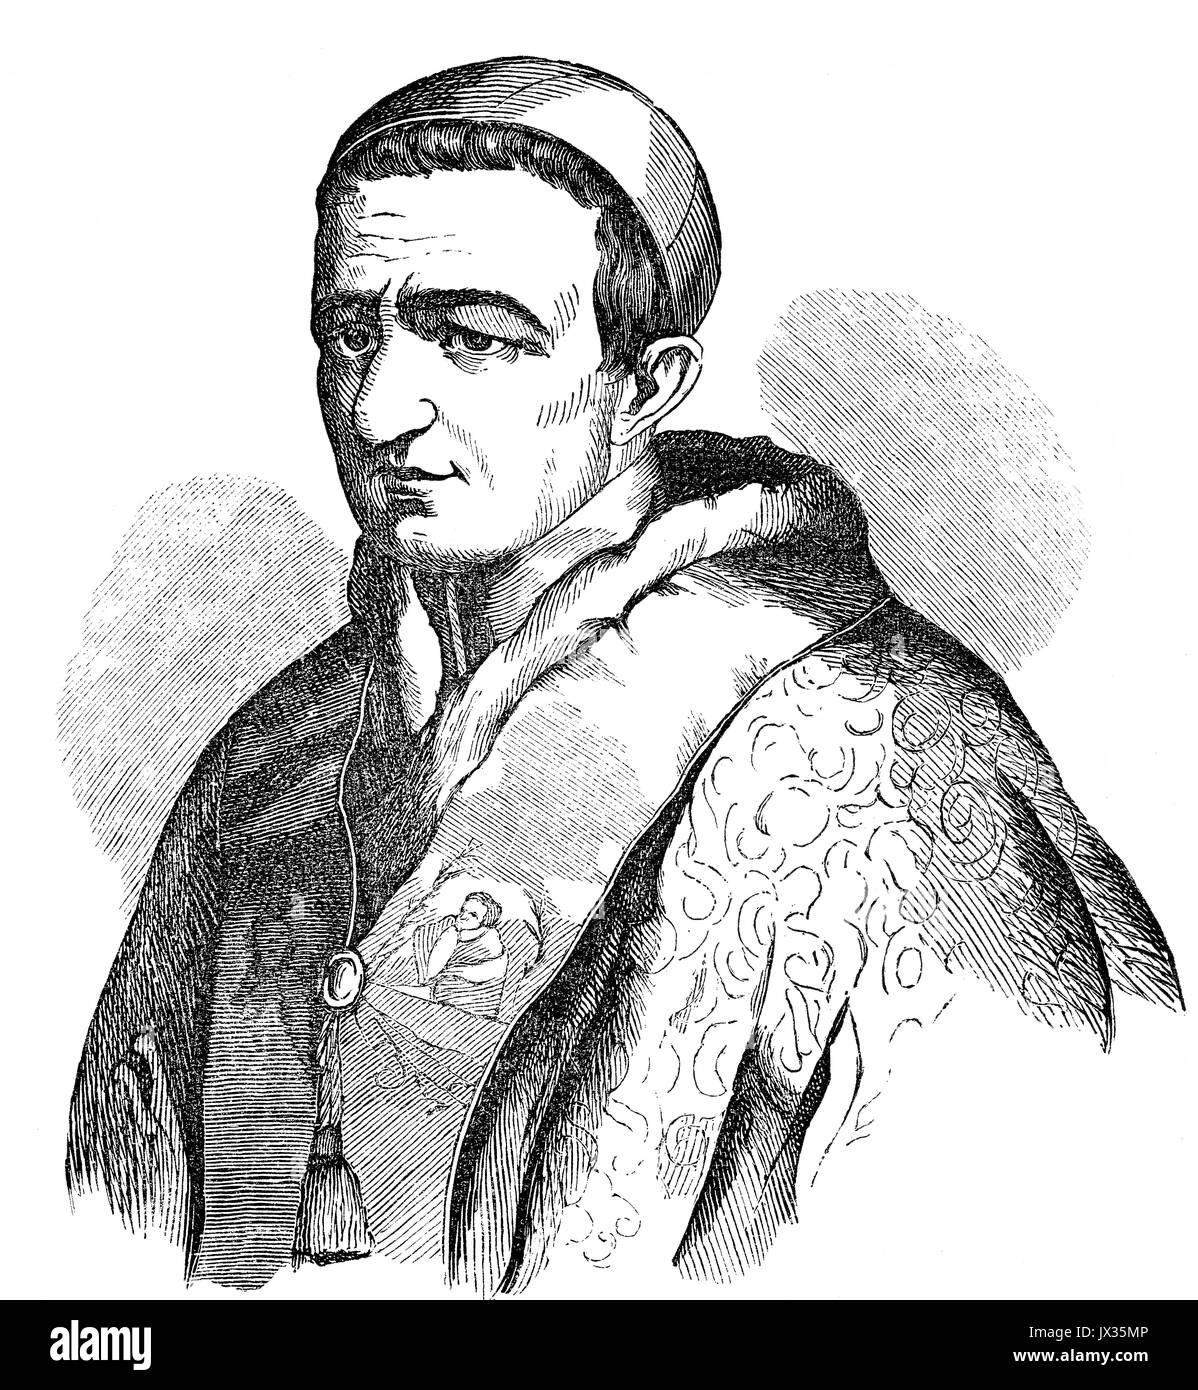 Le pape Grégoire XVI, le 18 septembre 1765 - 1 juin 1846, régna en tant que Pape à partir du 2 février 1831 à sa mort Banque D'Images